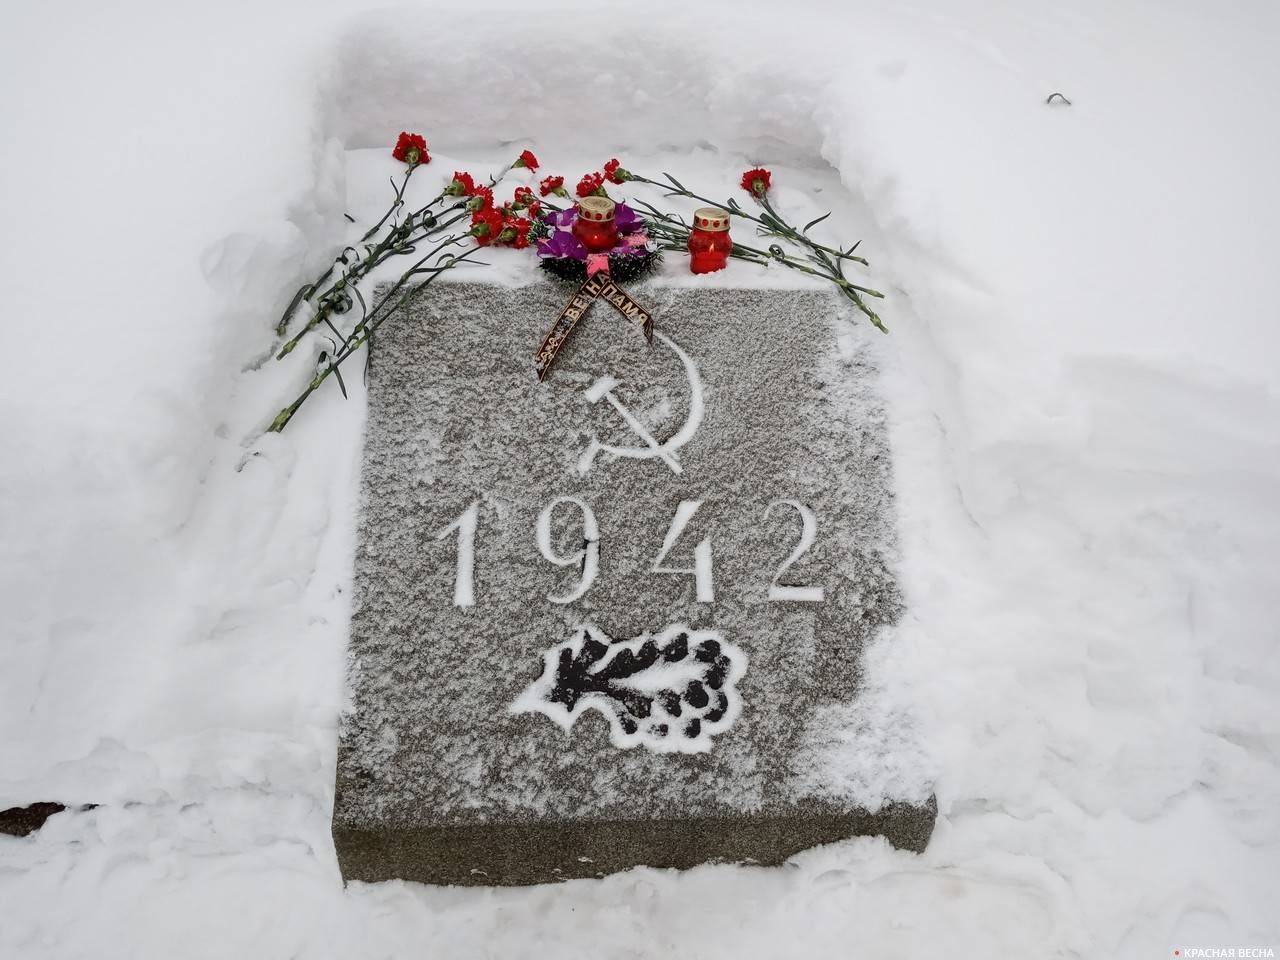 Памятный камень с указанием года захоронения гражданского населения в братской могиле. Пискаревское мемориальное кладбище, Санкт-Петербург